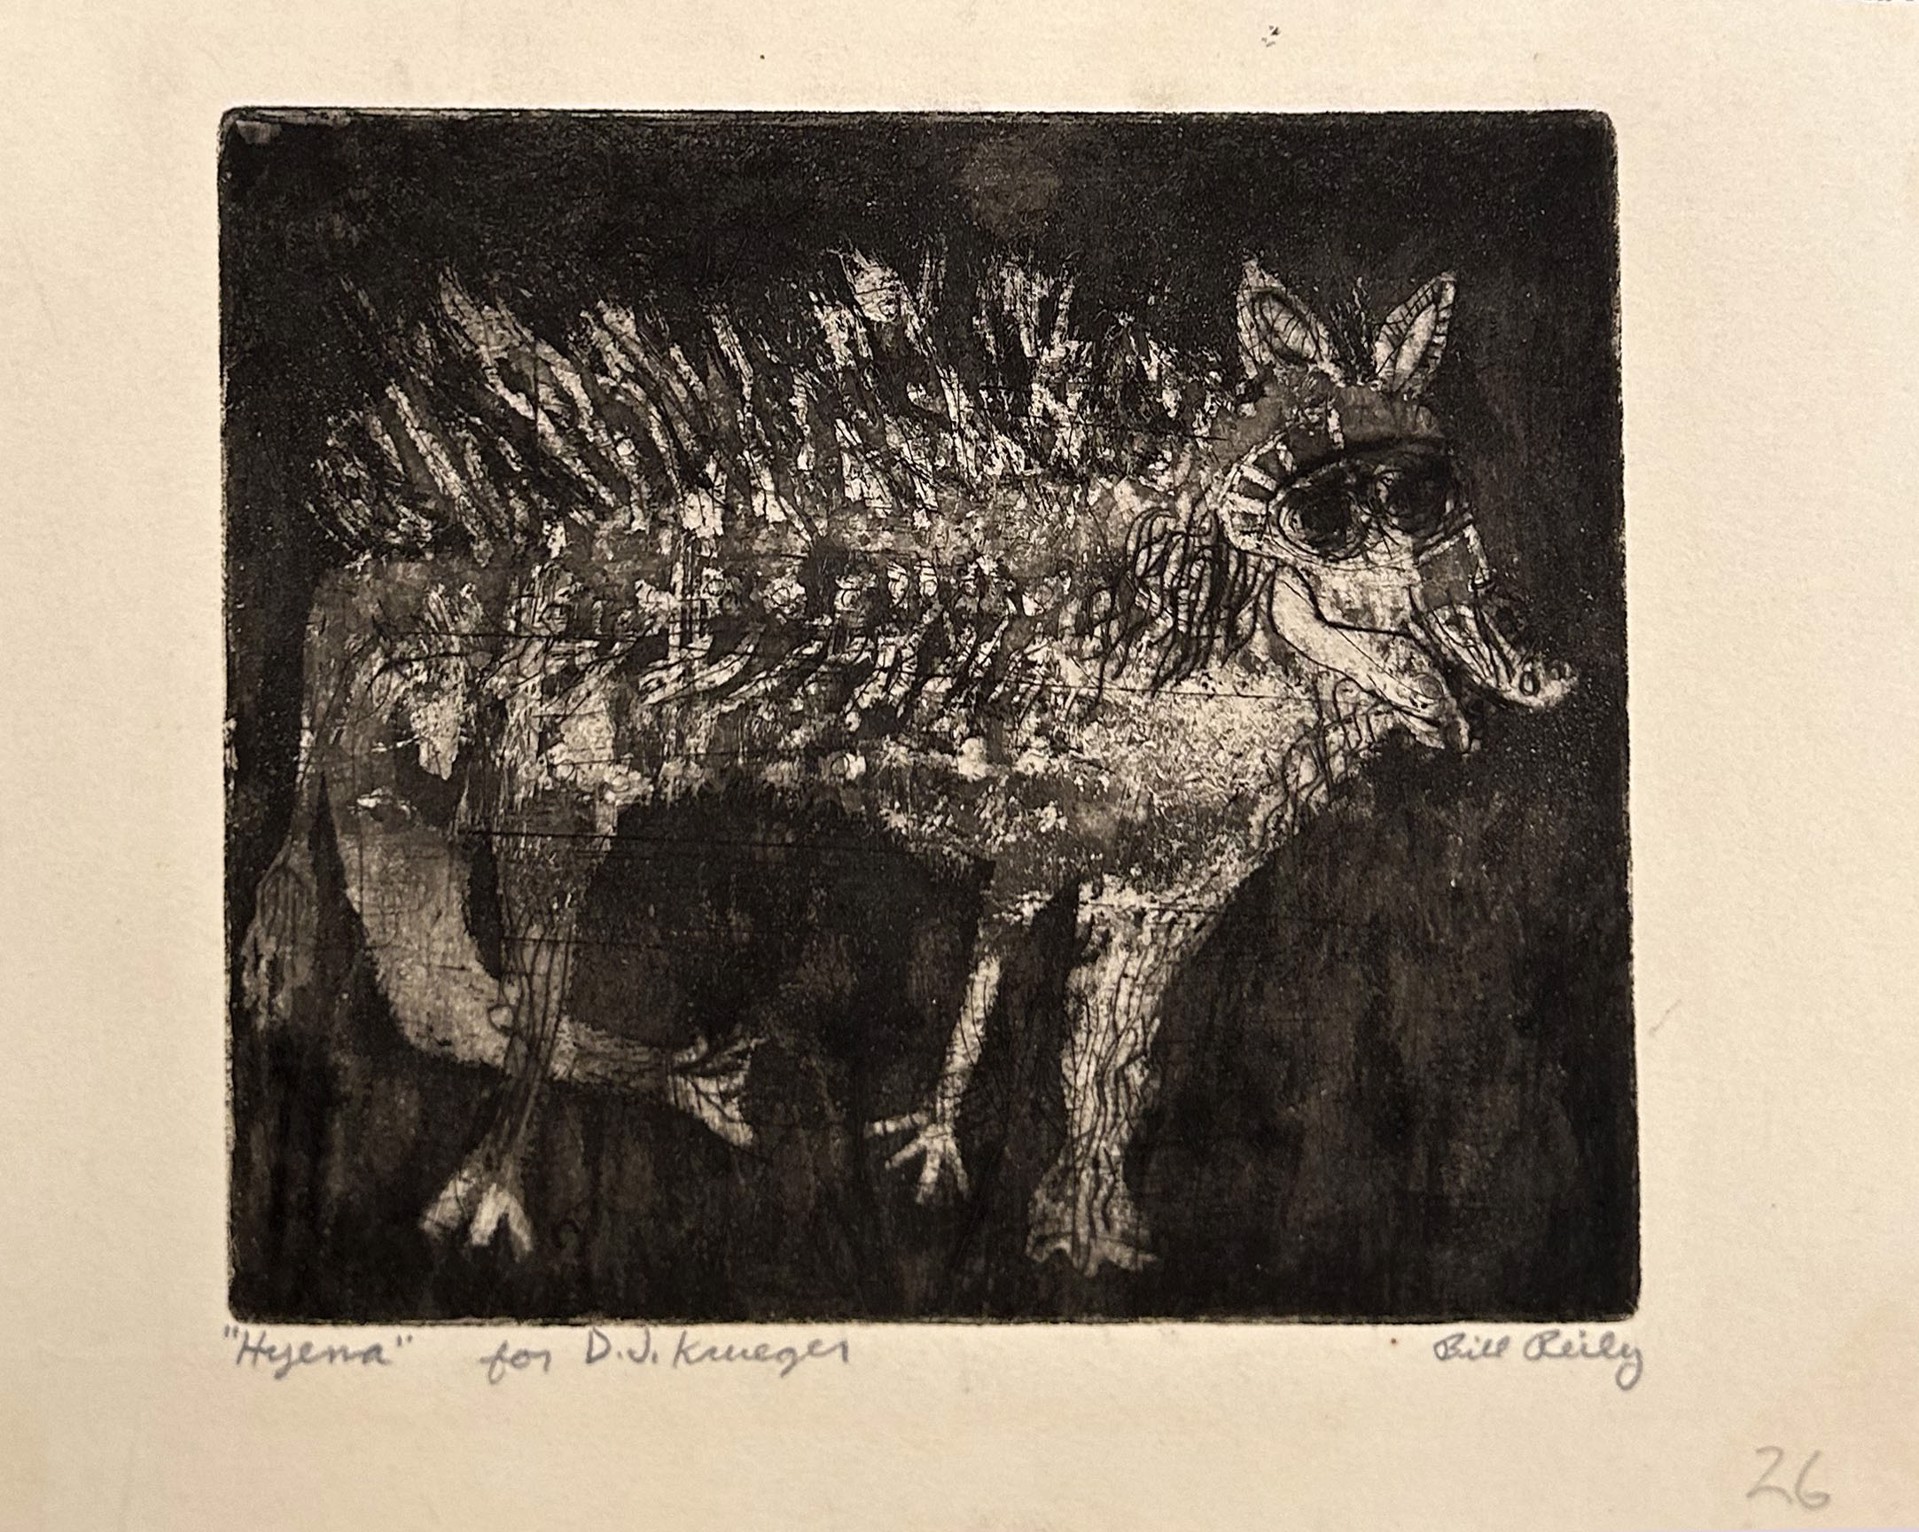 26. Steer ("Hyena" for D.J. Krueger) by Bill Reily - Prints